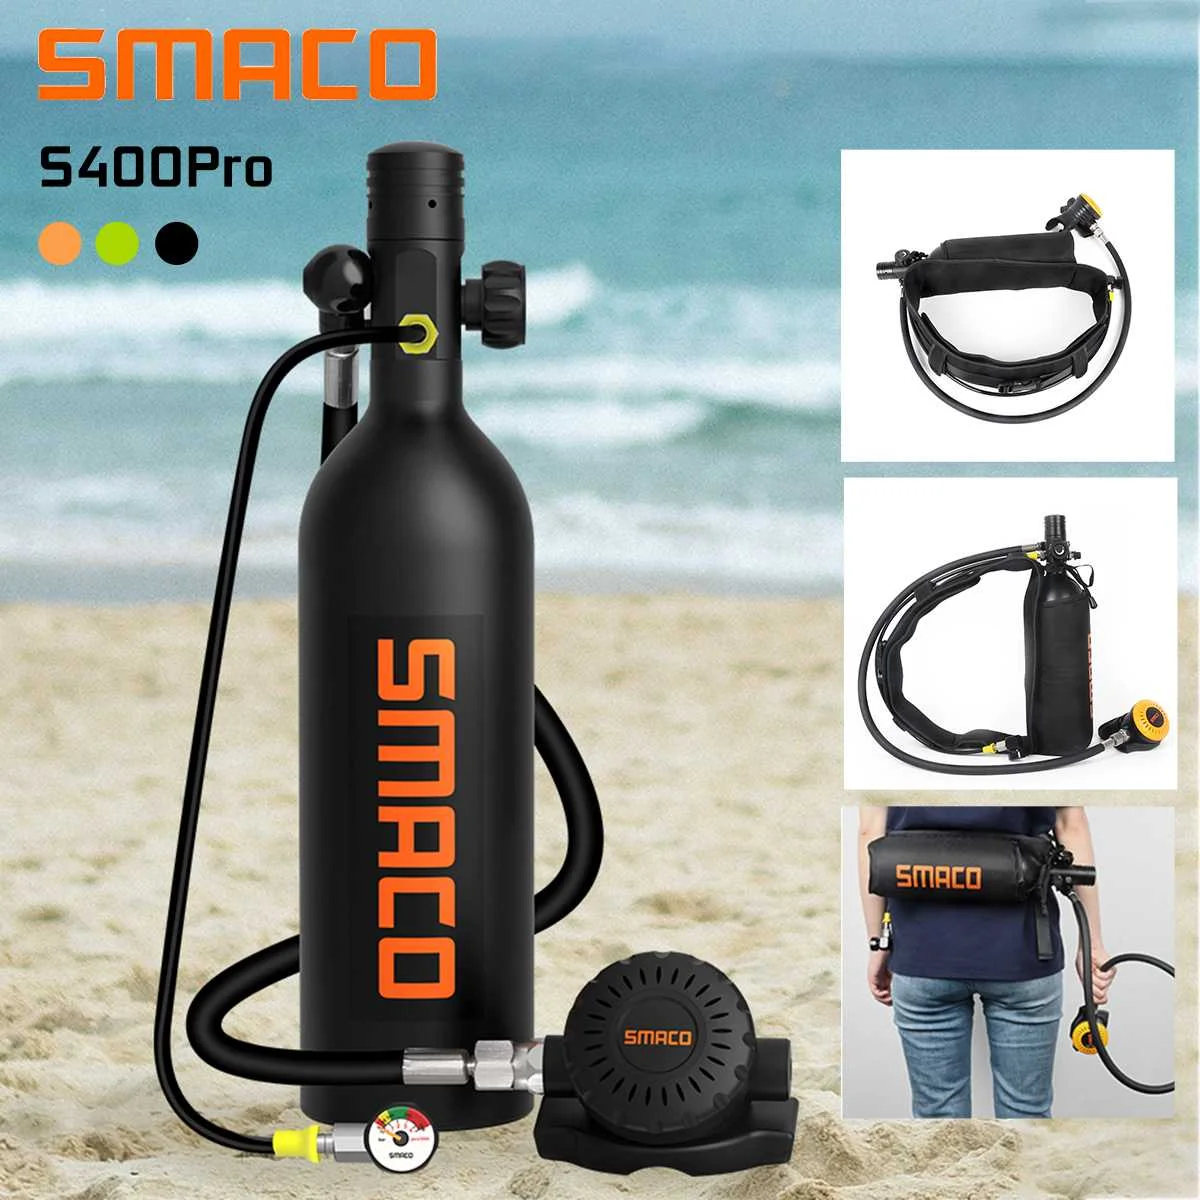 

Баллон для подводного плавания SMACO S400 Pro, 360 градусов, 1 л, кислородный бак, комплект, респиратор, резервуар для воздуха, комплект для дайвинга ...